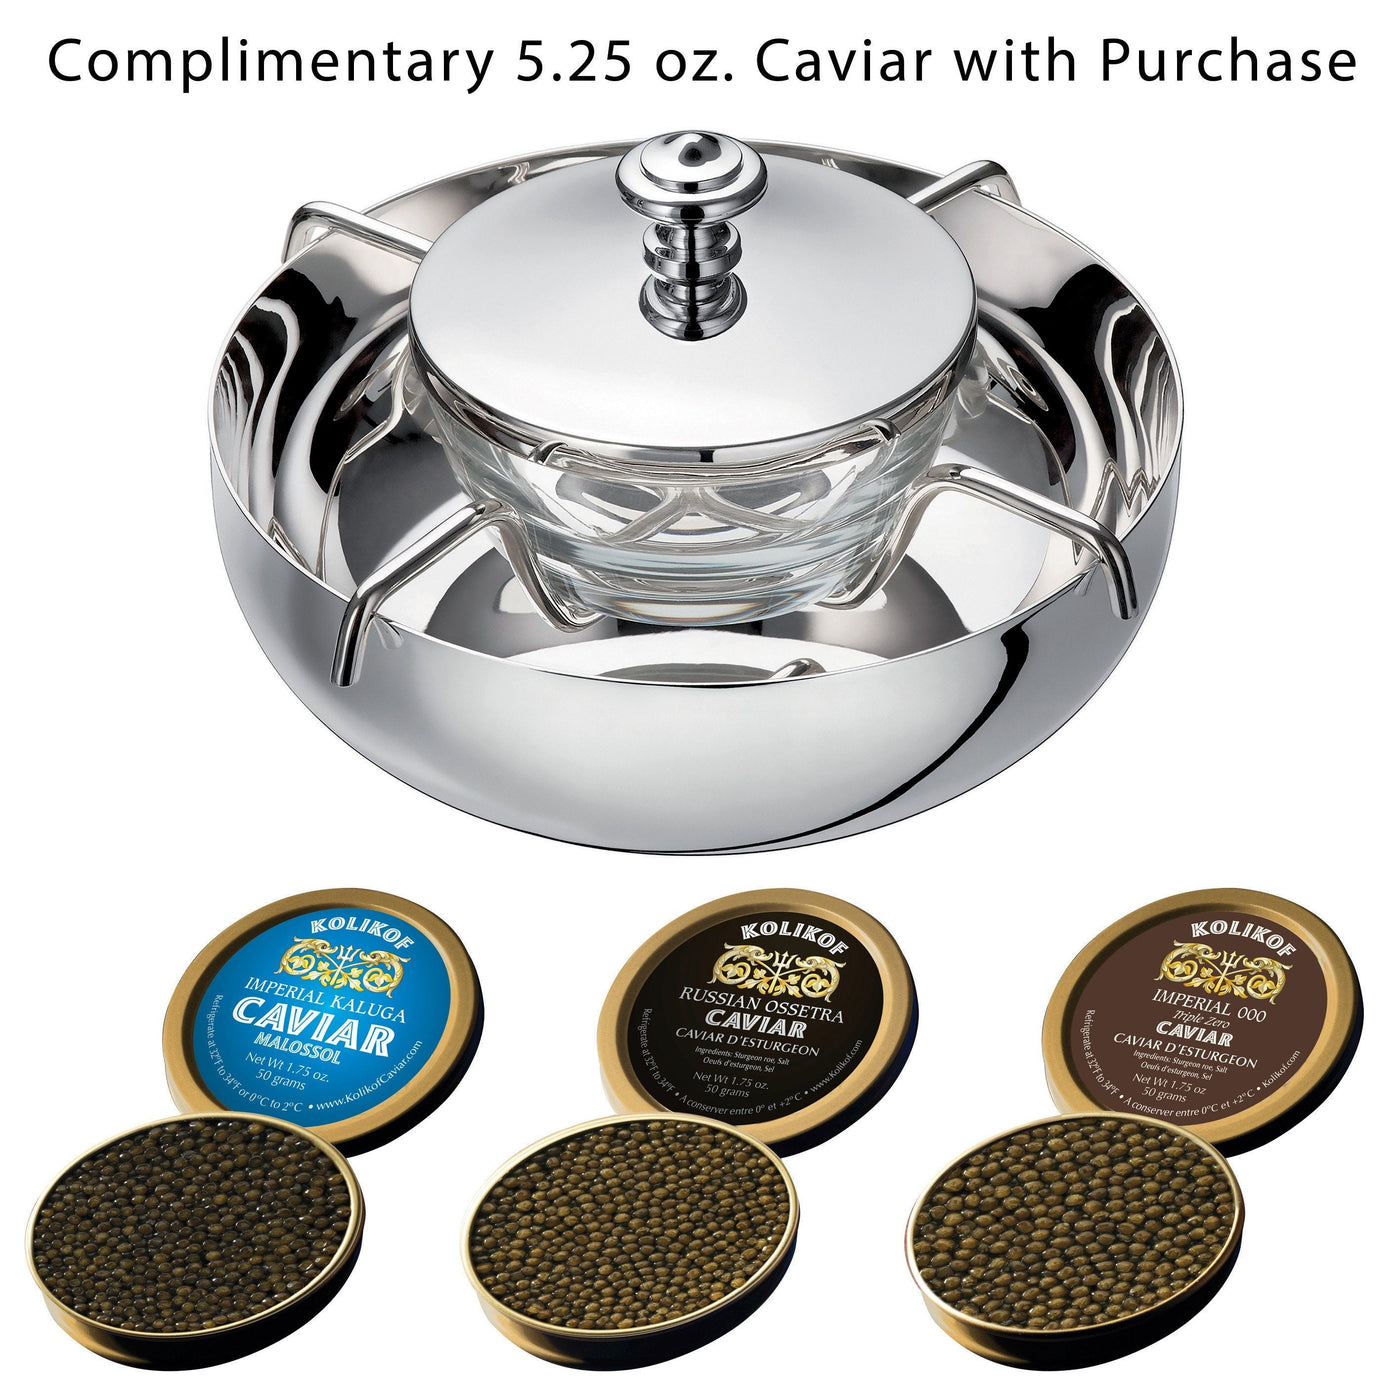 Christofle Caviar Serving Set with Osetra and Kaluga Kolikof Caviar